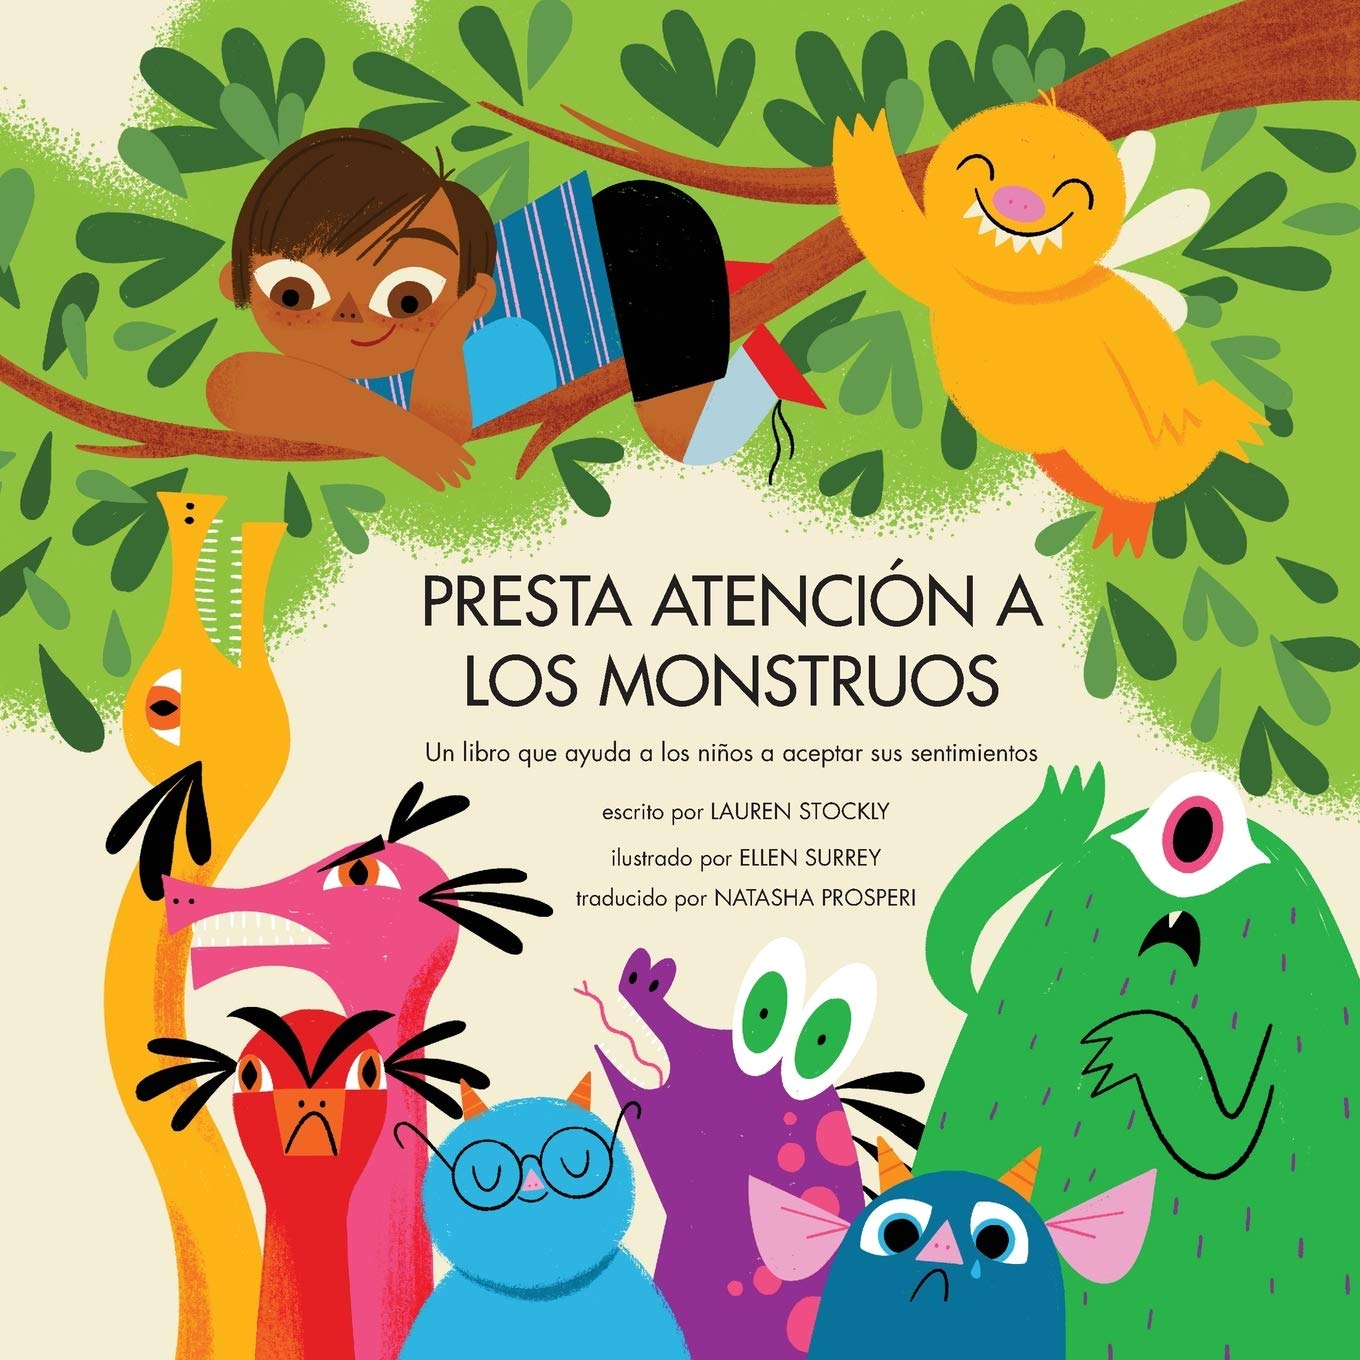 Presta atención a los monstruos: Un libro que ayuda a los niños a aceptar sus sentimientos (Spanish Edition)